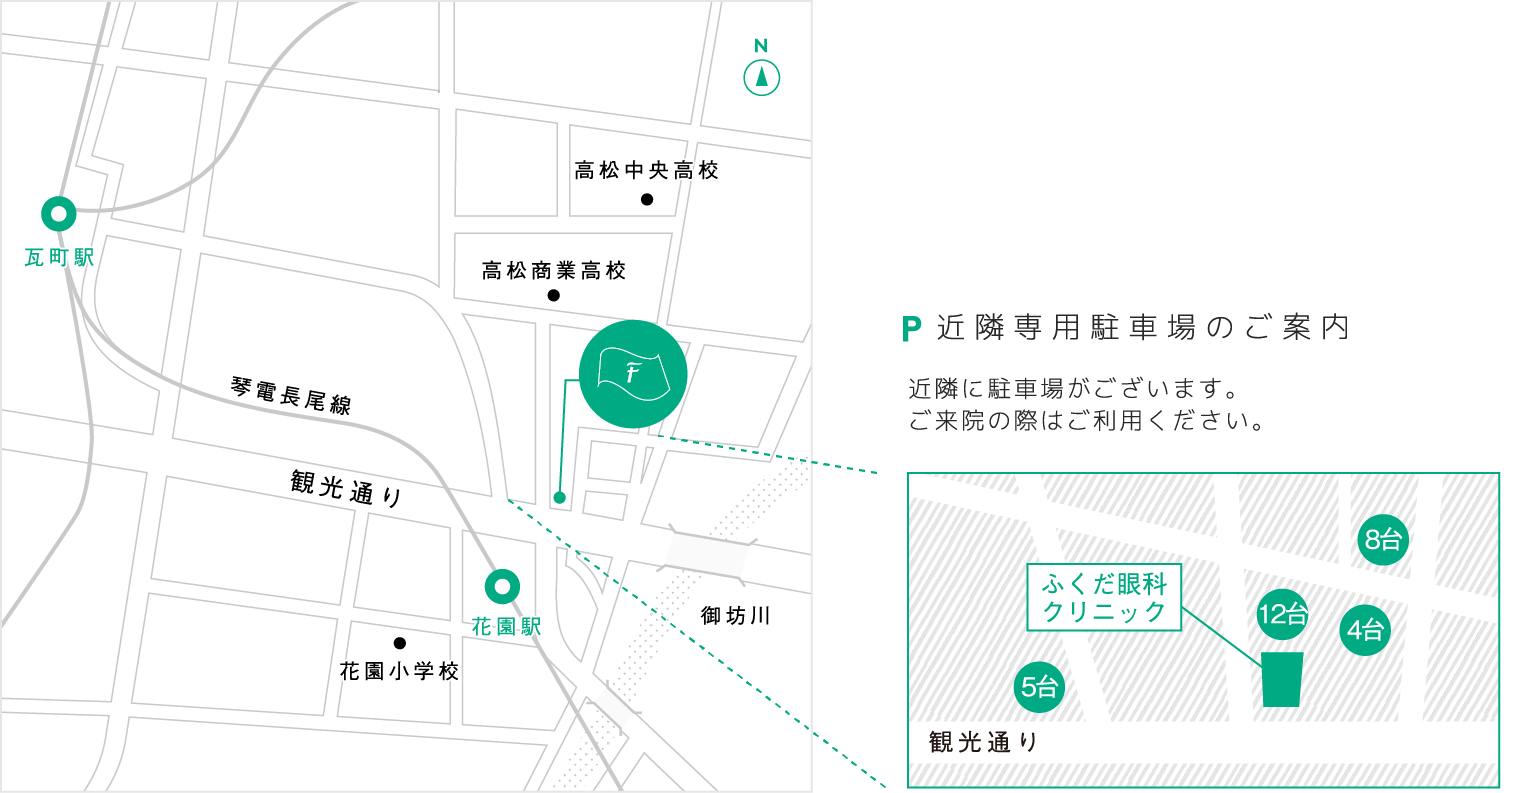 高松中央IC(屋島、高松方面)北へ2km 須崎東交差点左折西へ1km